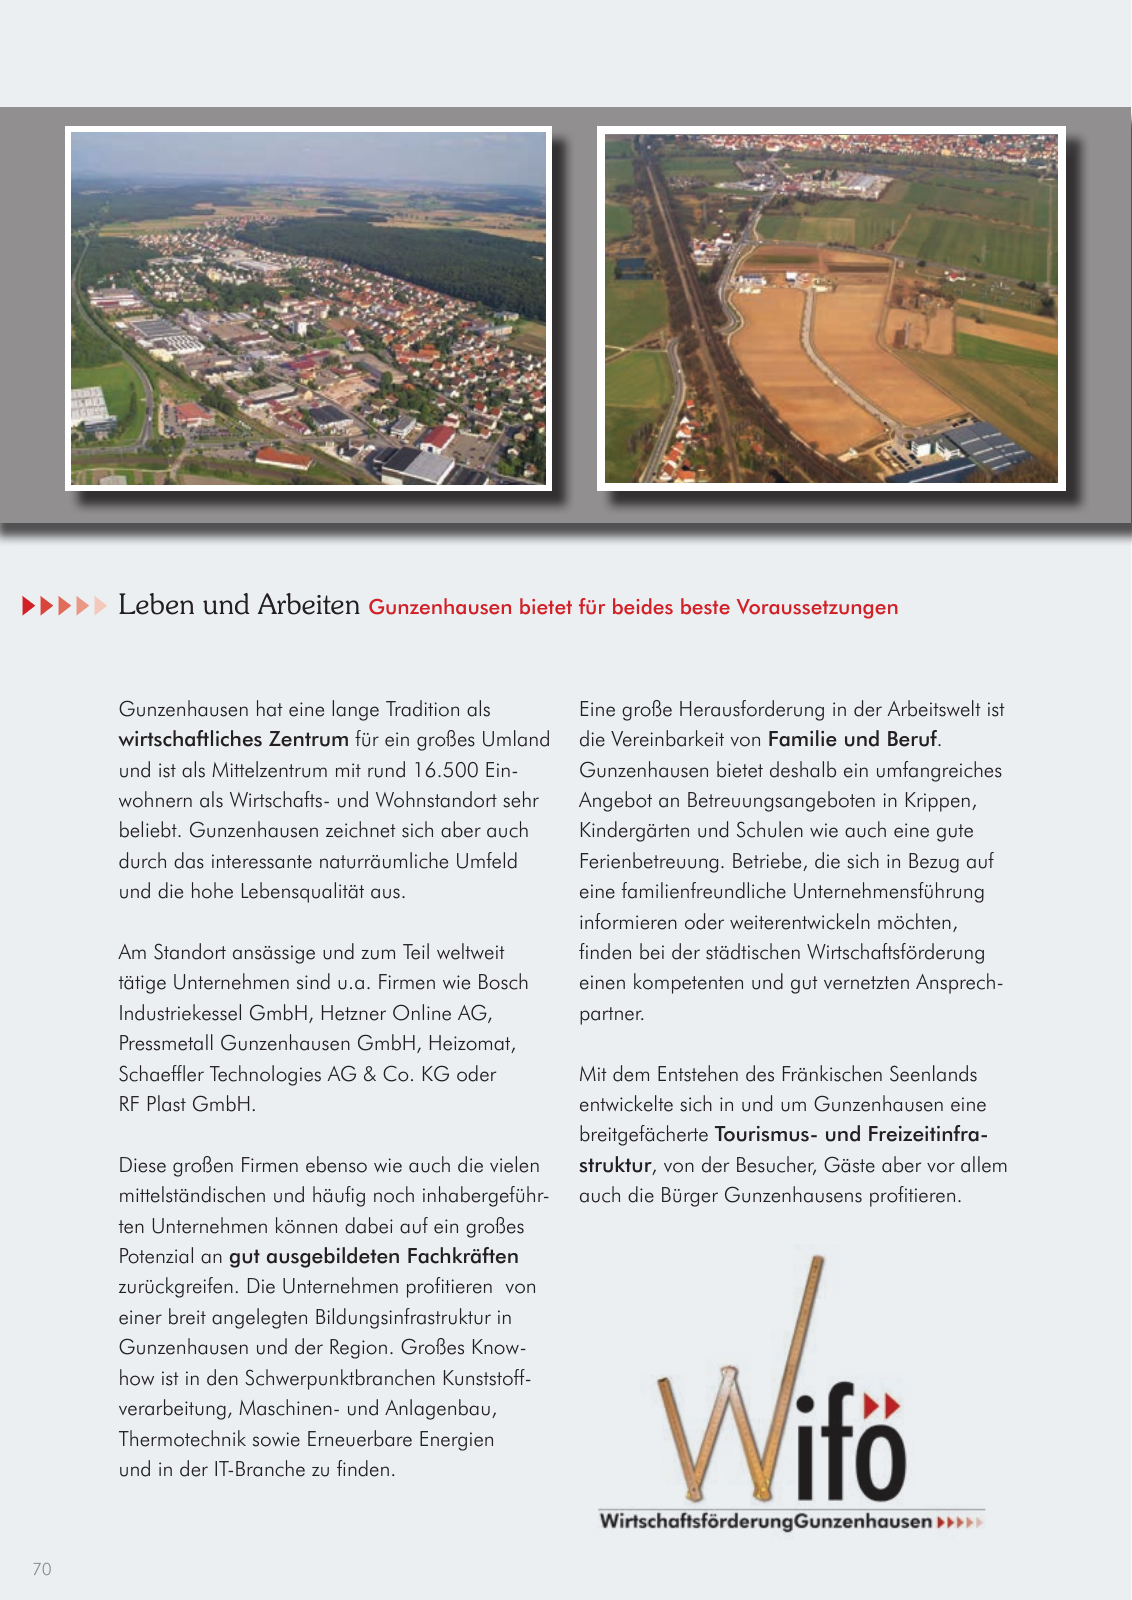 Vorschau leben & arbeiten in Gunzenhausen - 2015 Seite 70